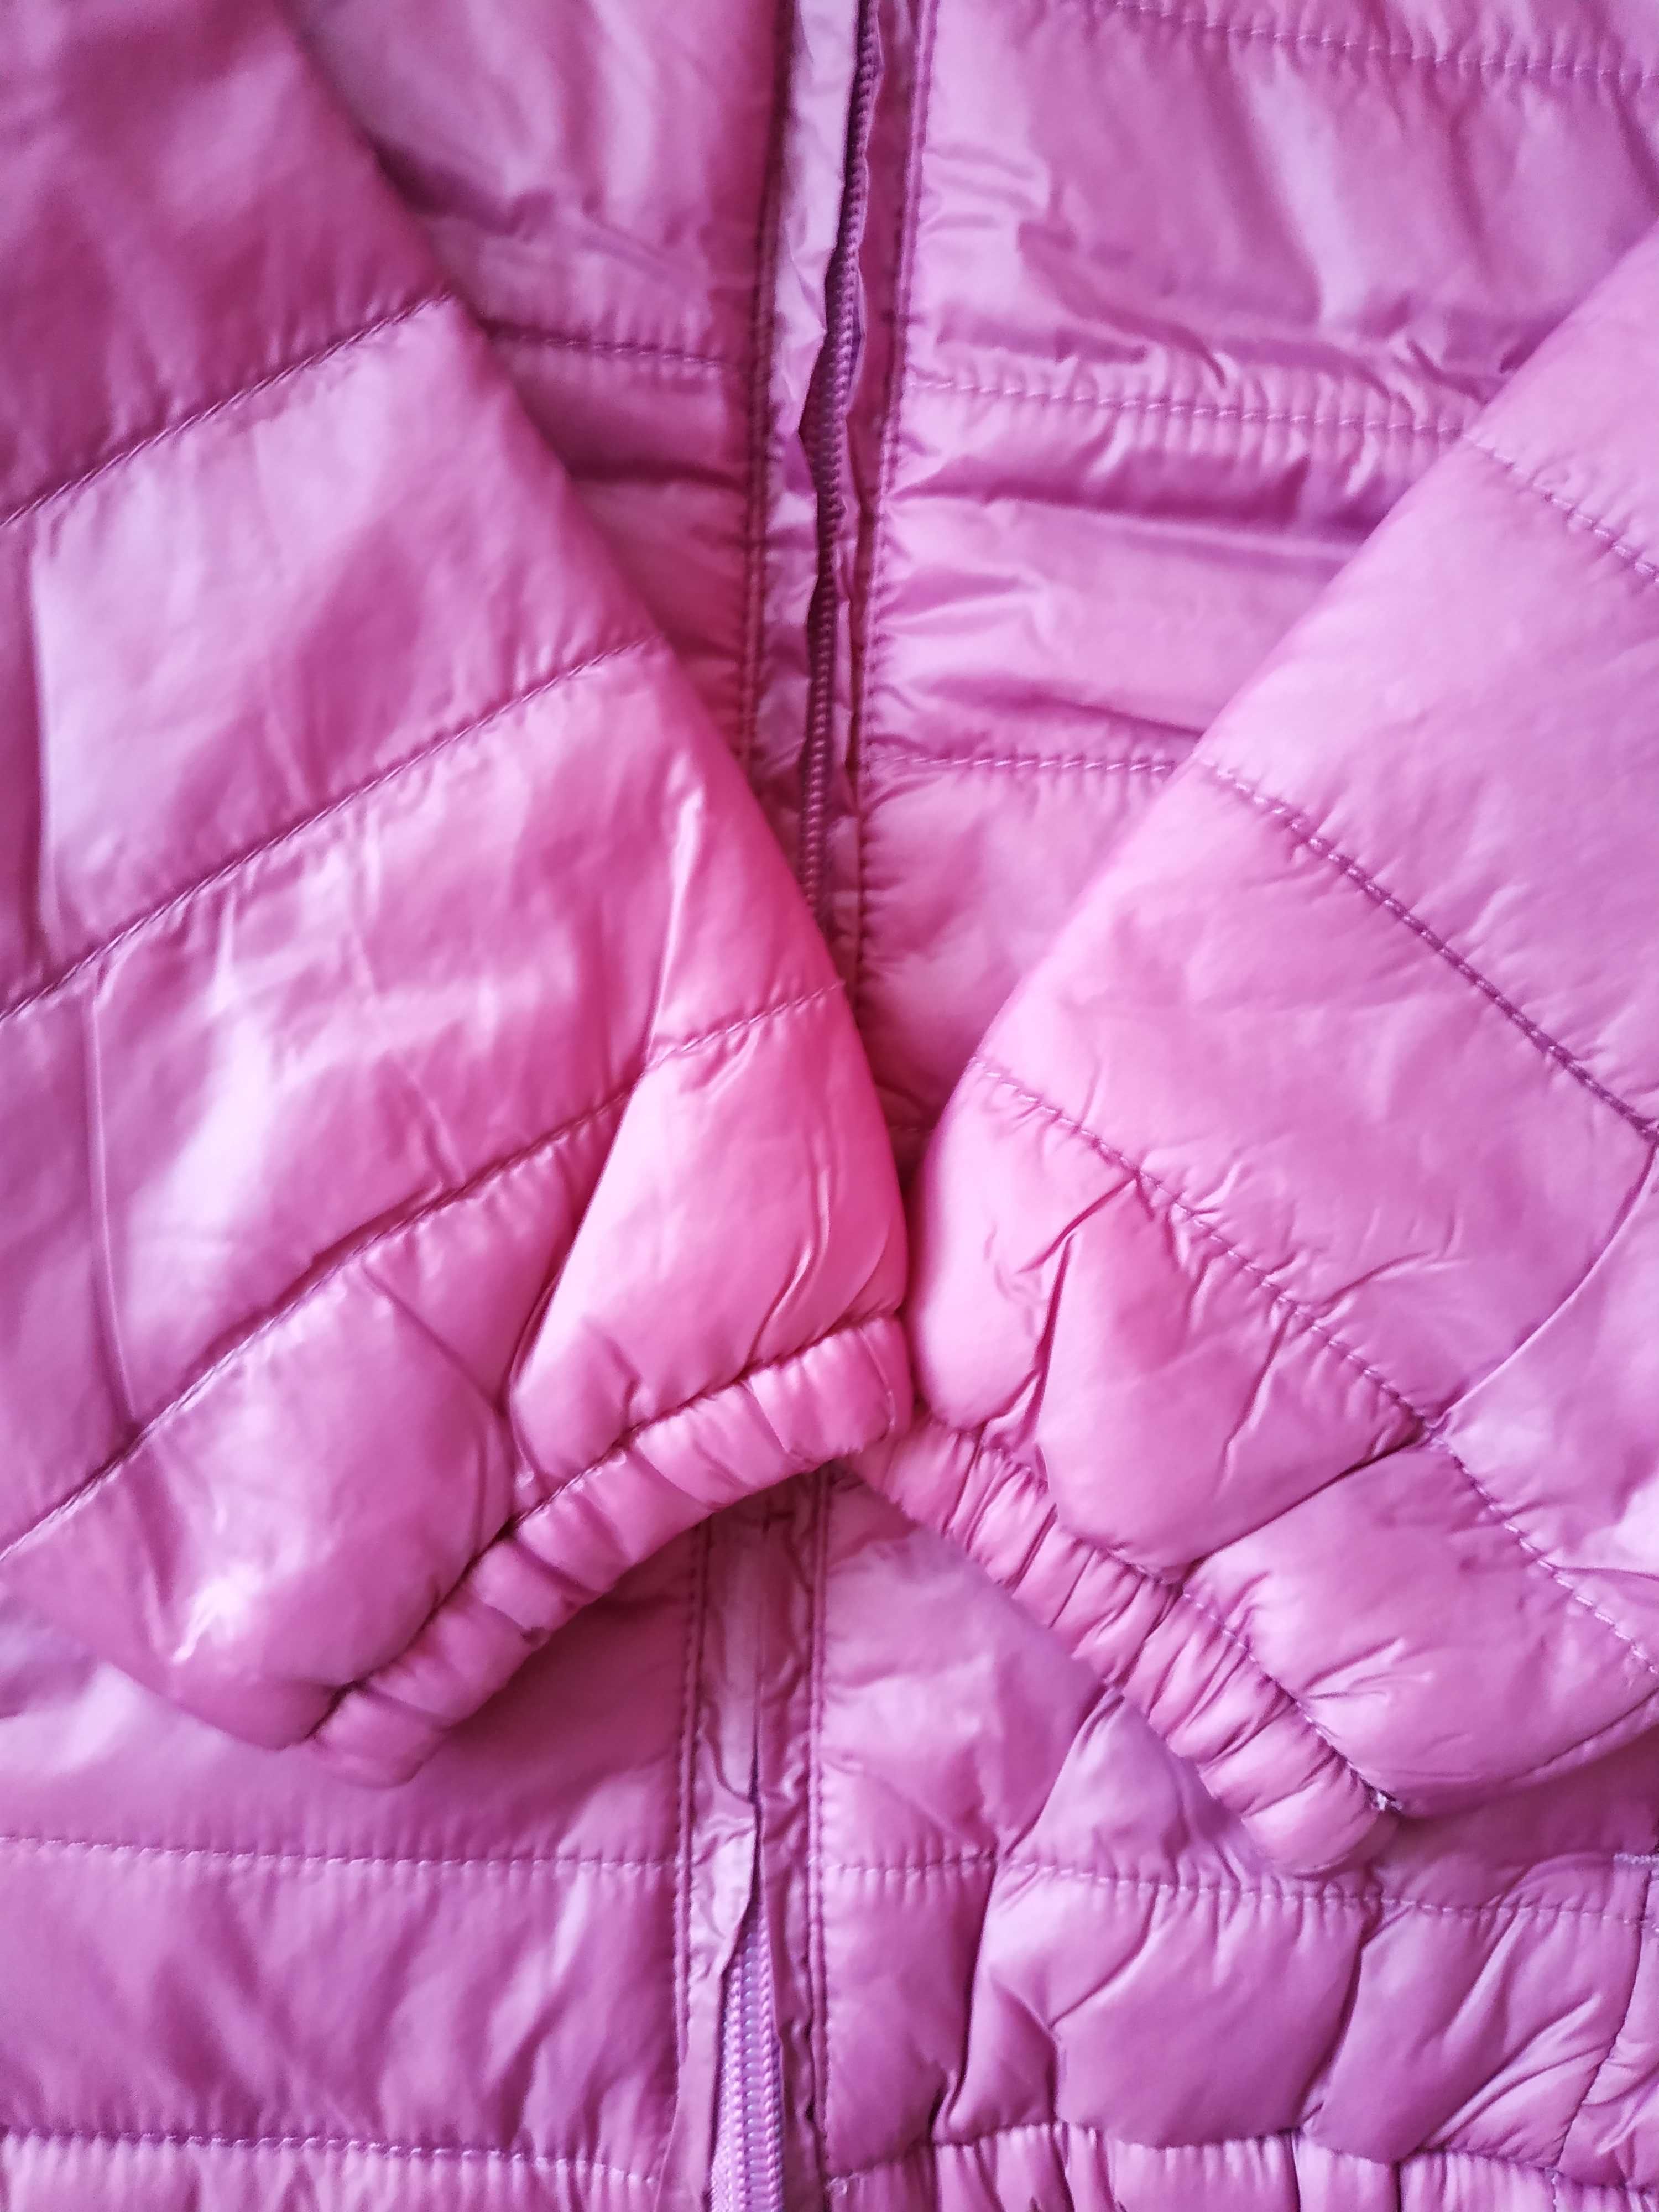 Демісезонна курточка для дівчинки, нова, розмір 116